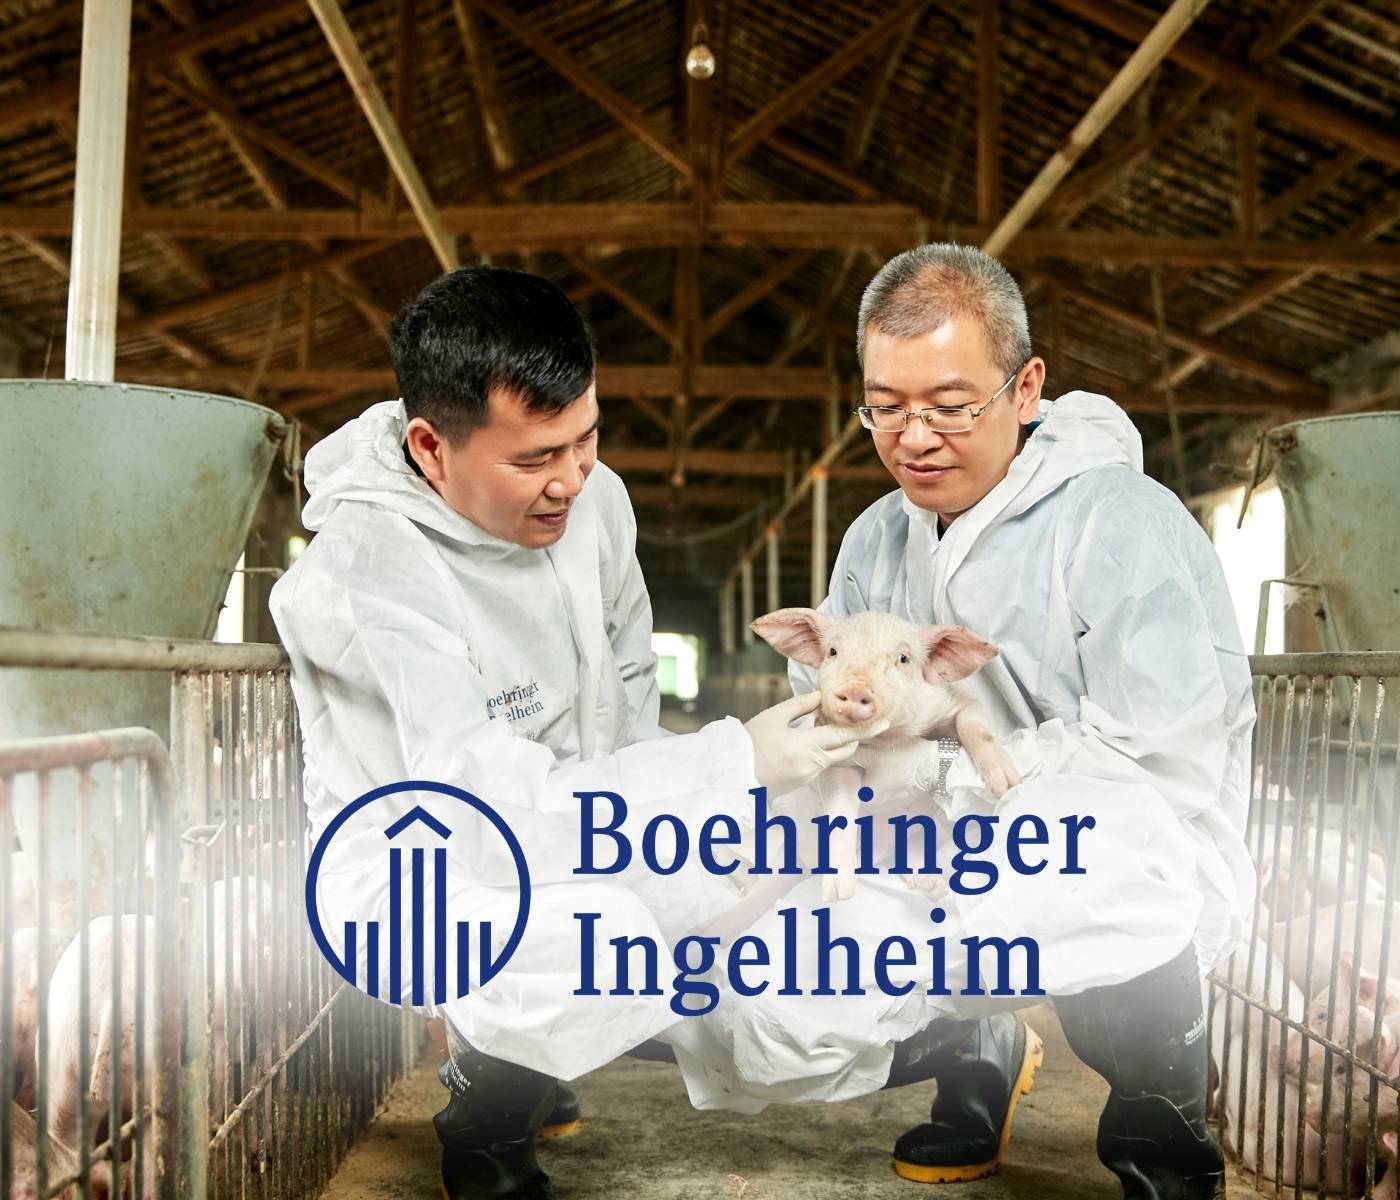 Boehringer Ingelheim lança nova vacina com foco no bem-estar animal que combate as formas mais prevalentes de Salmoneloses em suínos no Brasil